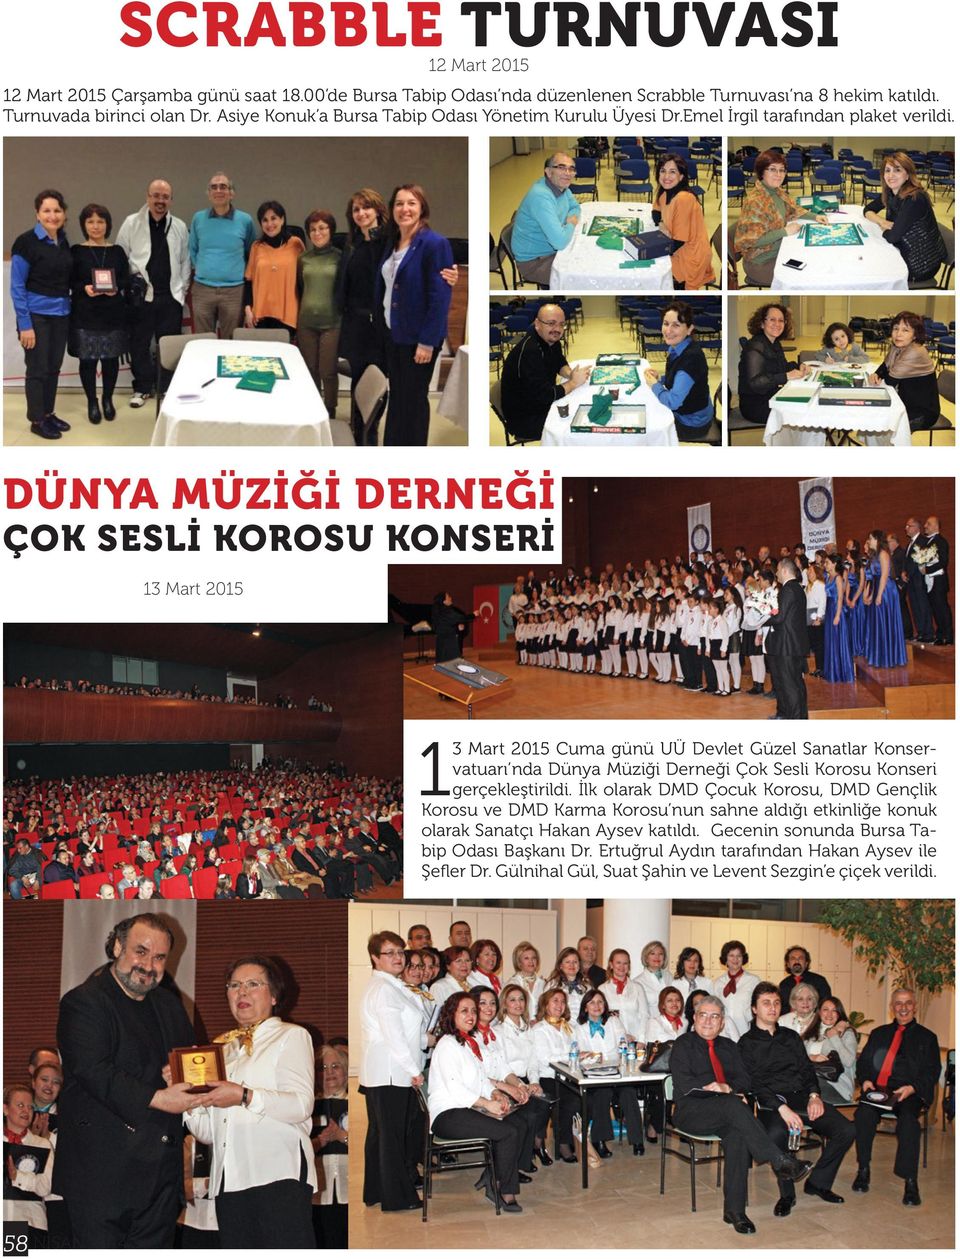 Dünya Müziği Derneği Çok Sesli Korosu Konseri 13 Mart 2015 13 Mart 2015 Cuma günü UÜ Devlet Güzel Sanatlar Konservatuarı nda Dünya Müziği Derneği Çok Sesli Korosu Konseri gerçekleştirildi.